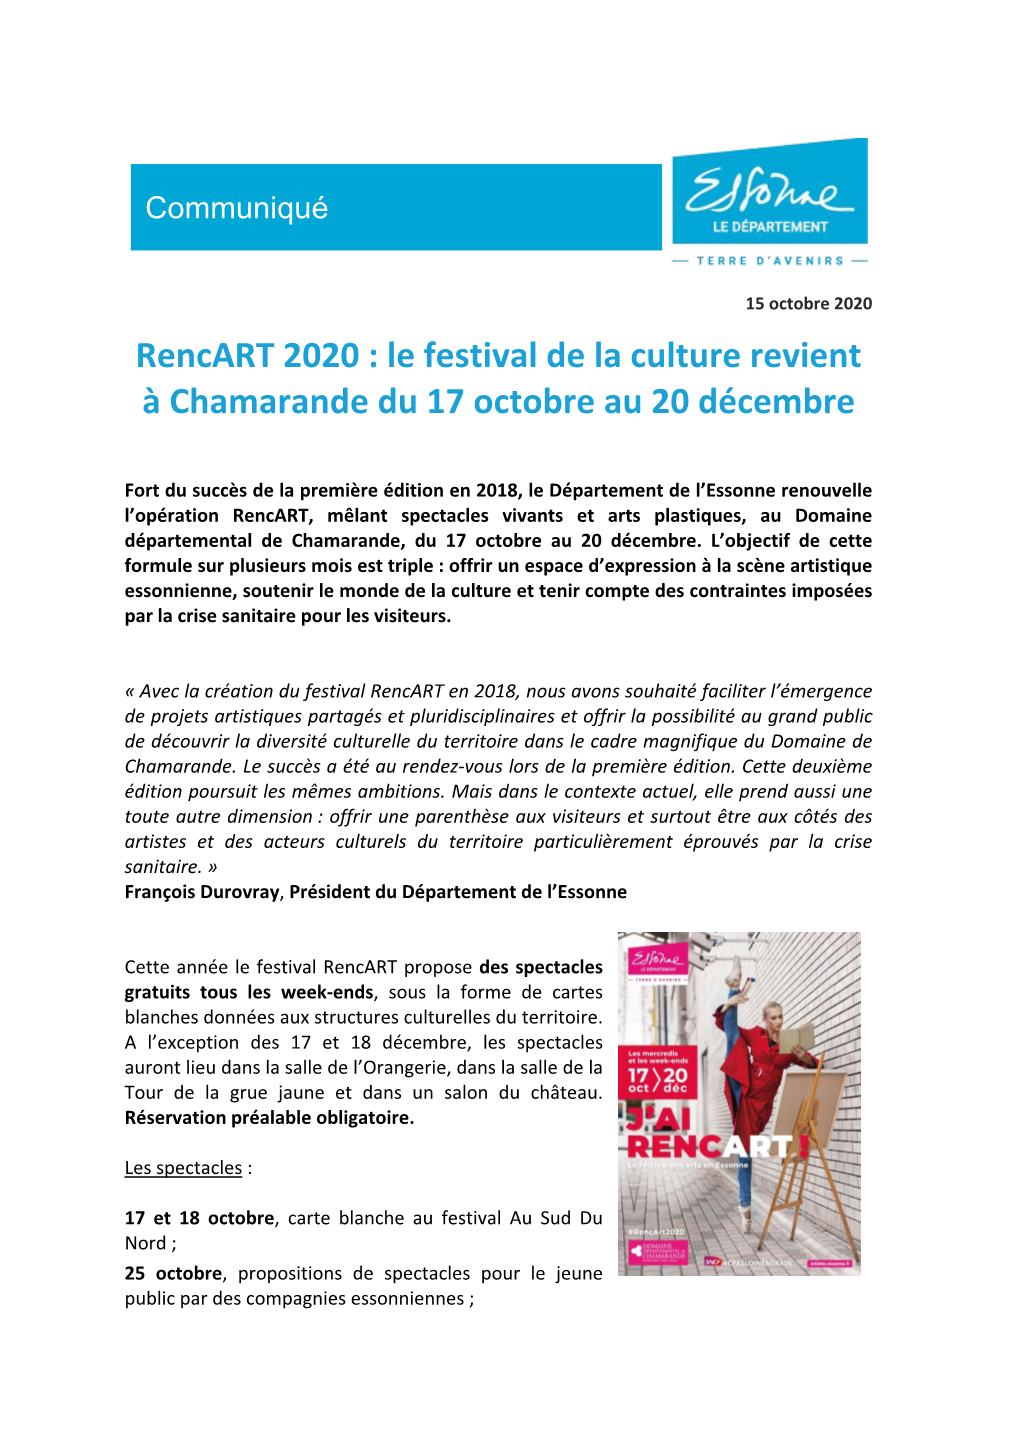 Rencart 2020 : Le Festival De La Culture Revient À Chamarande Du 17 Octobre Au 20 Décembre